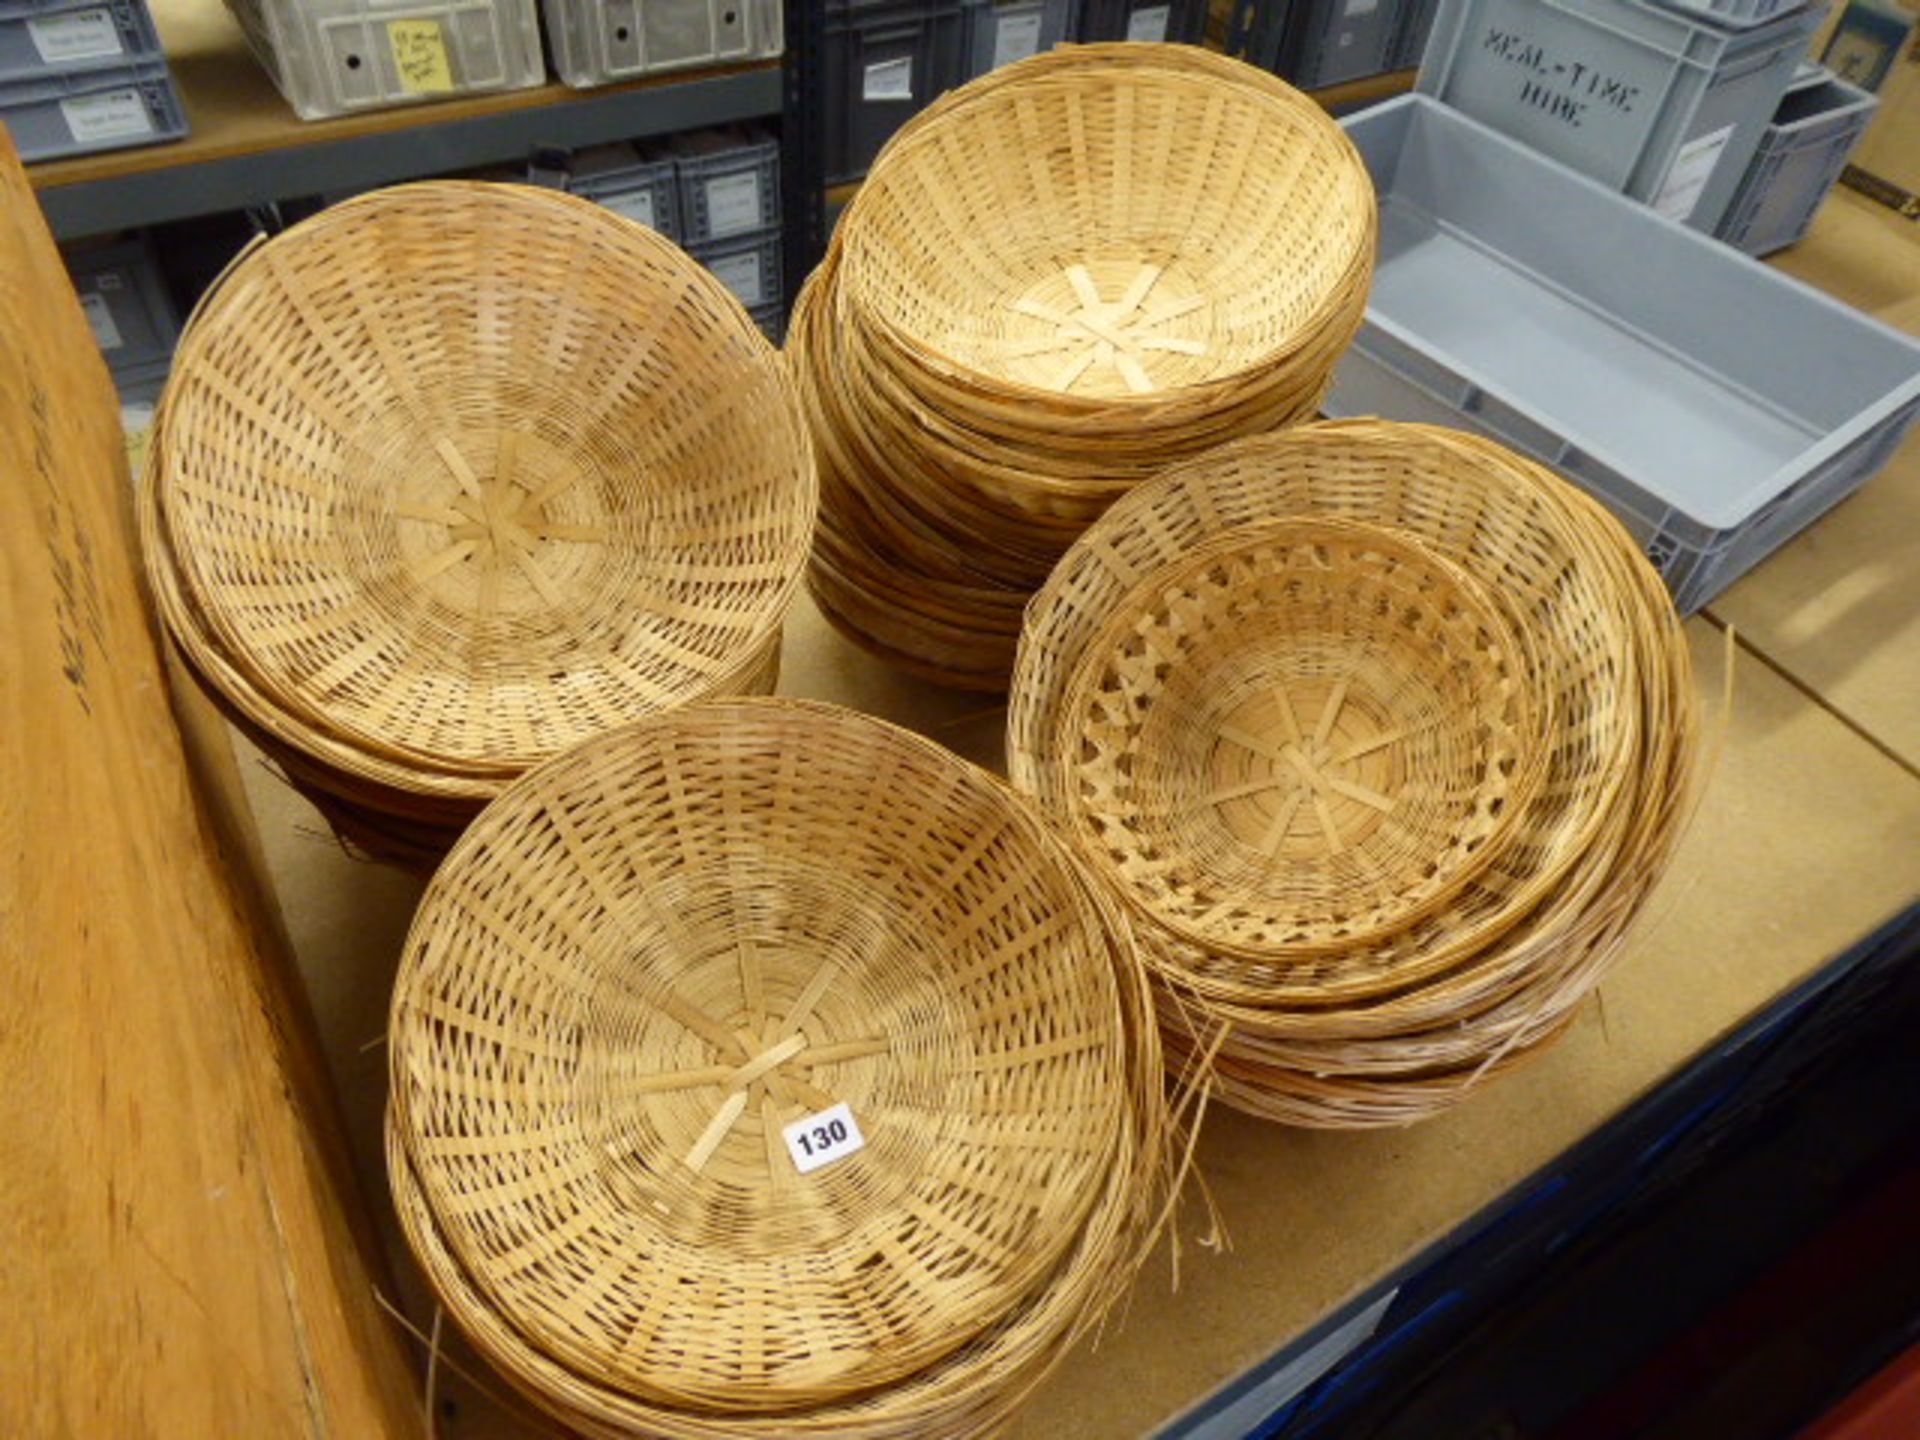 4 stacks of wicker bread baskets